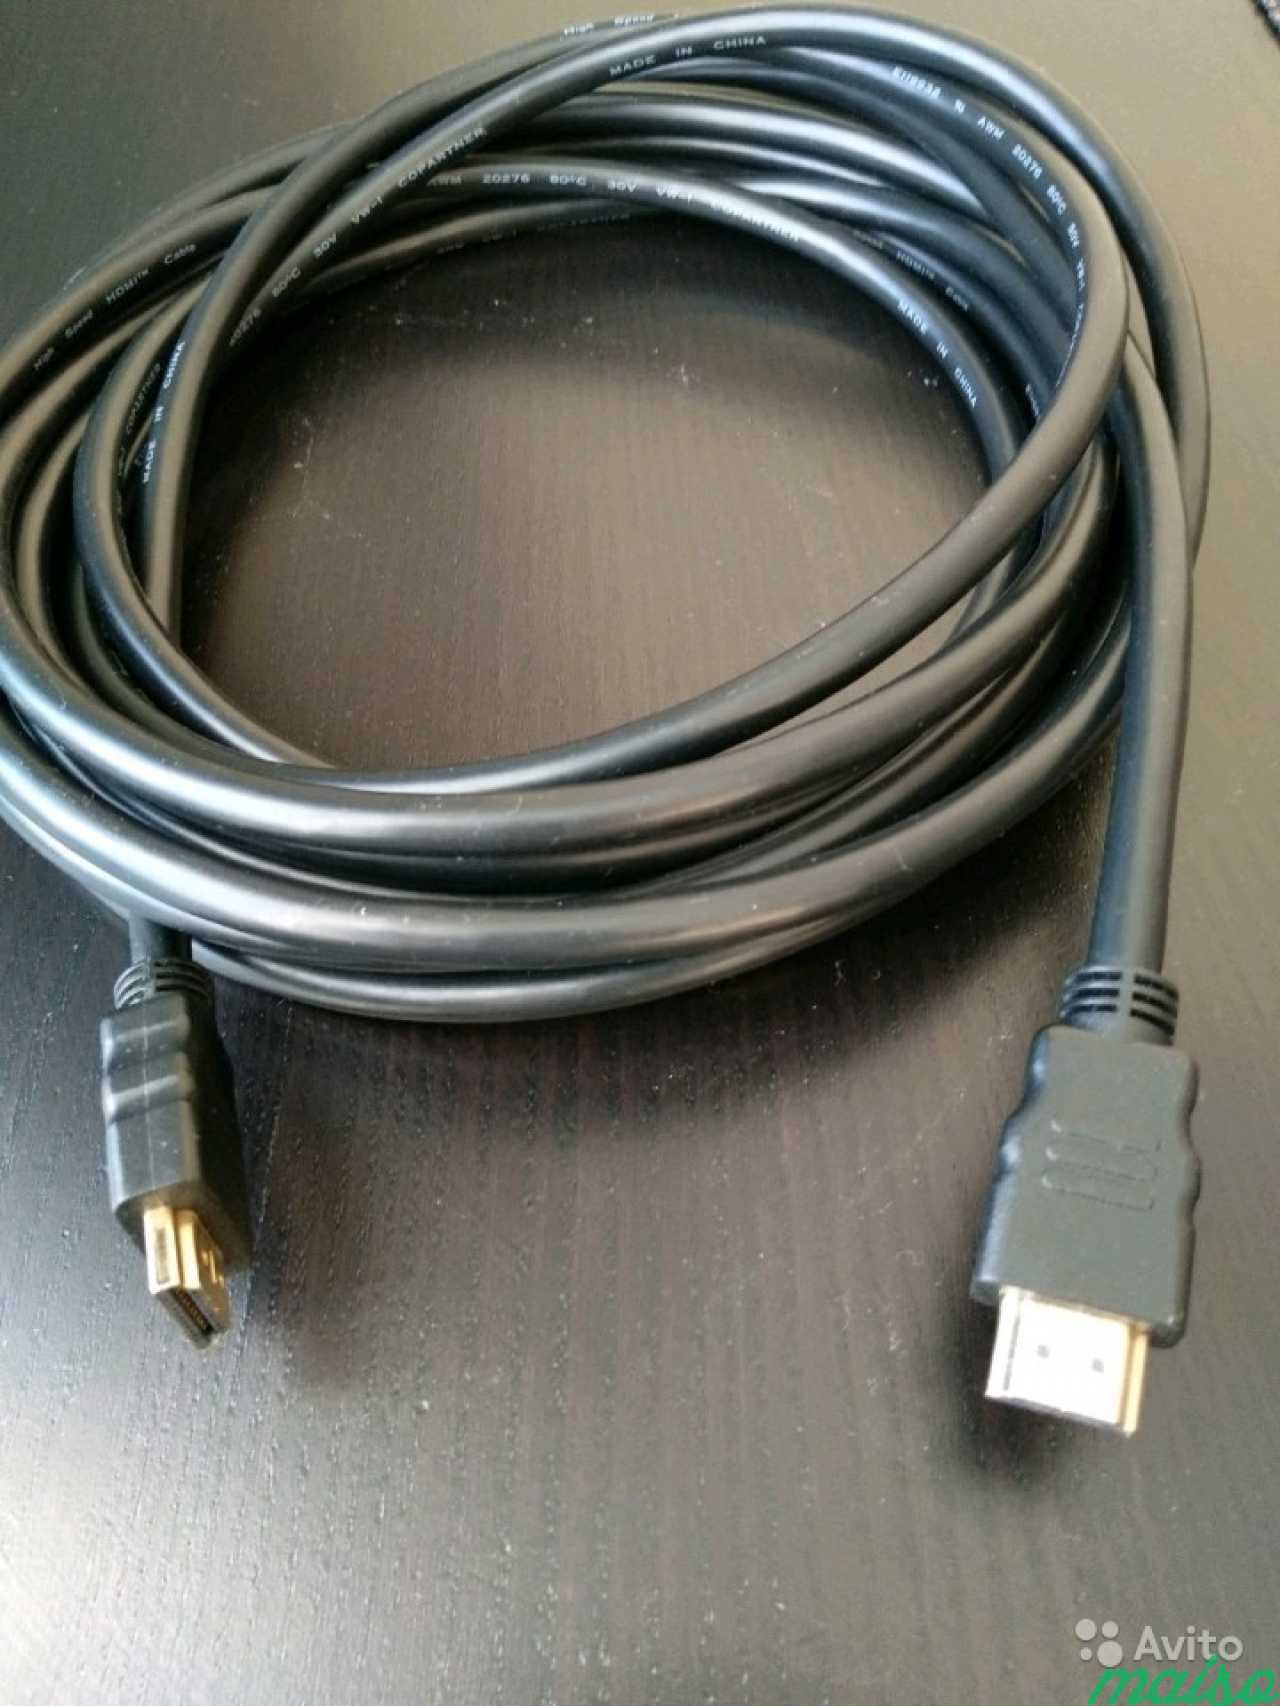 Кабель для приставки купить. Sony ps4 HDMI кабель. HDMI кабель для сони плейстейшен 3. Кабель HDMI Sony PLAYSTATION 4 Pro. HDMI кабель ps4 оригинал.